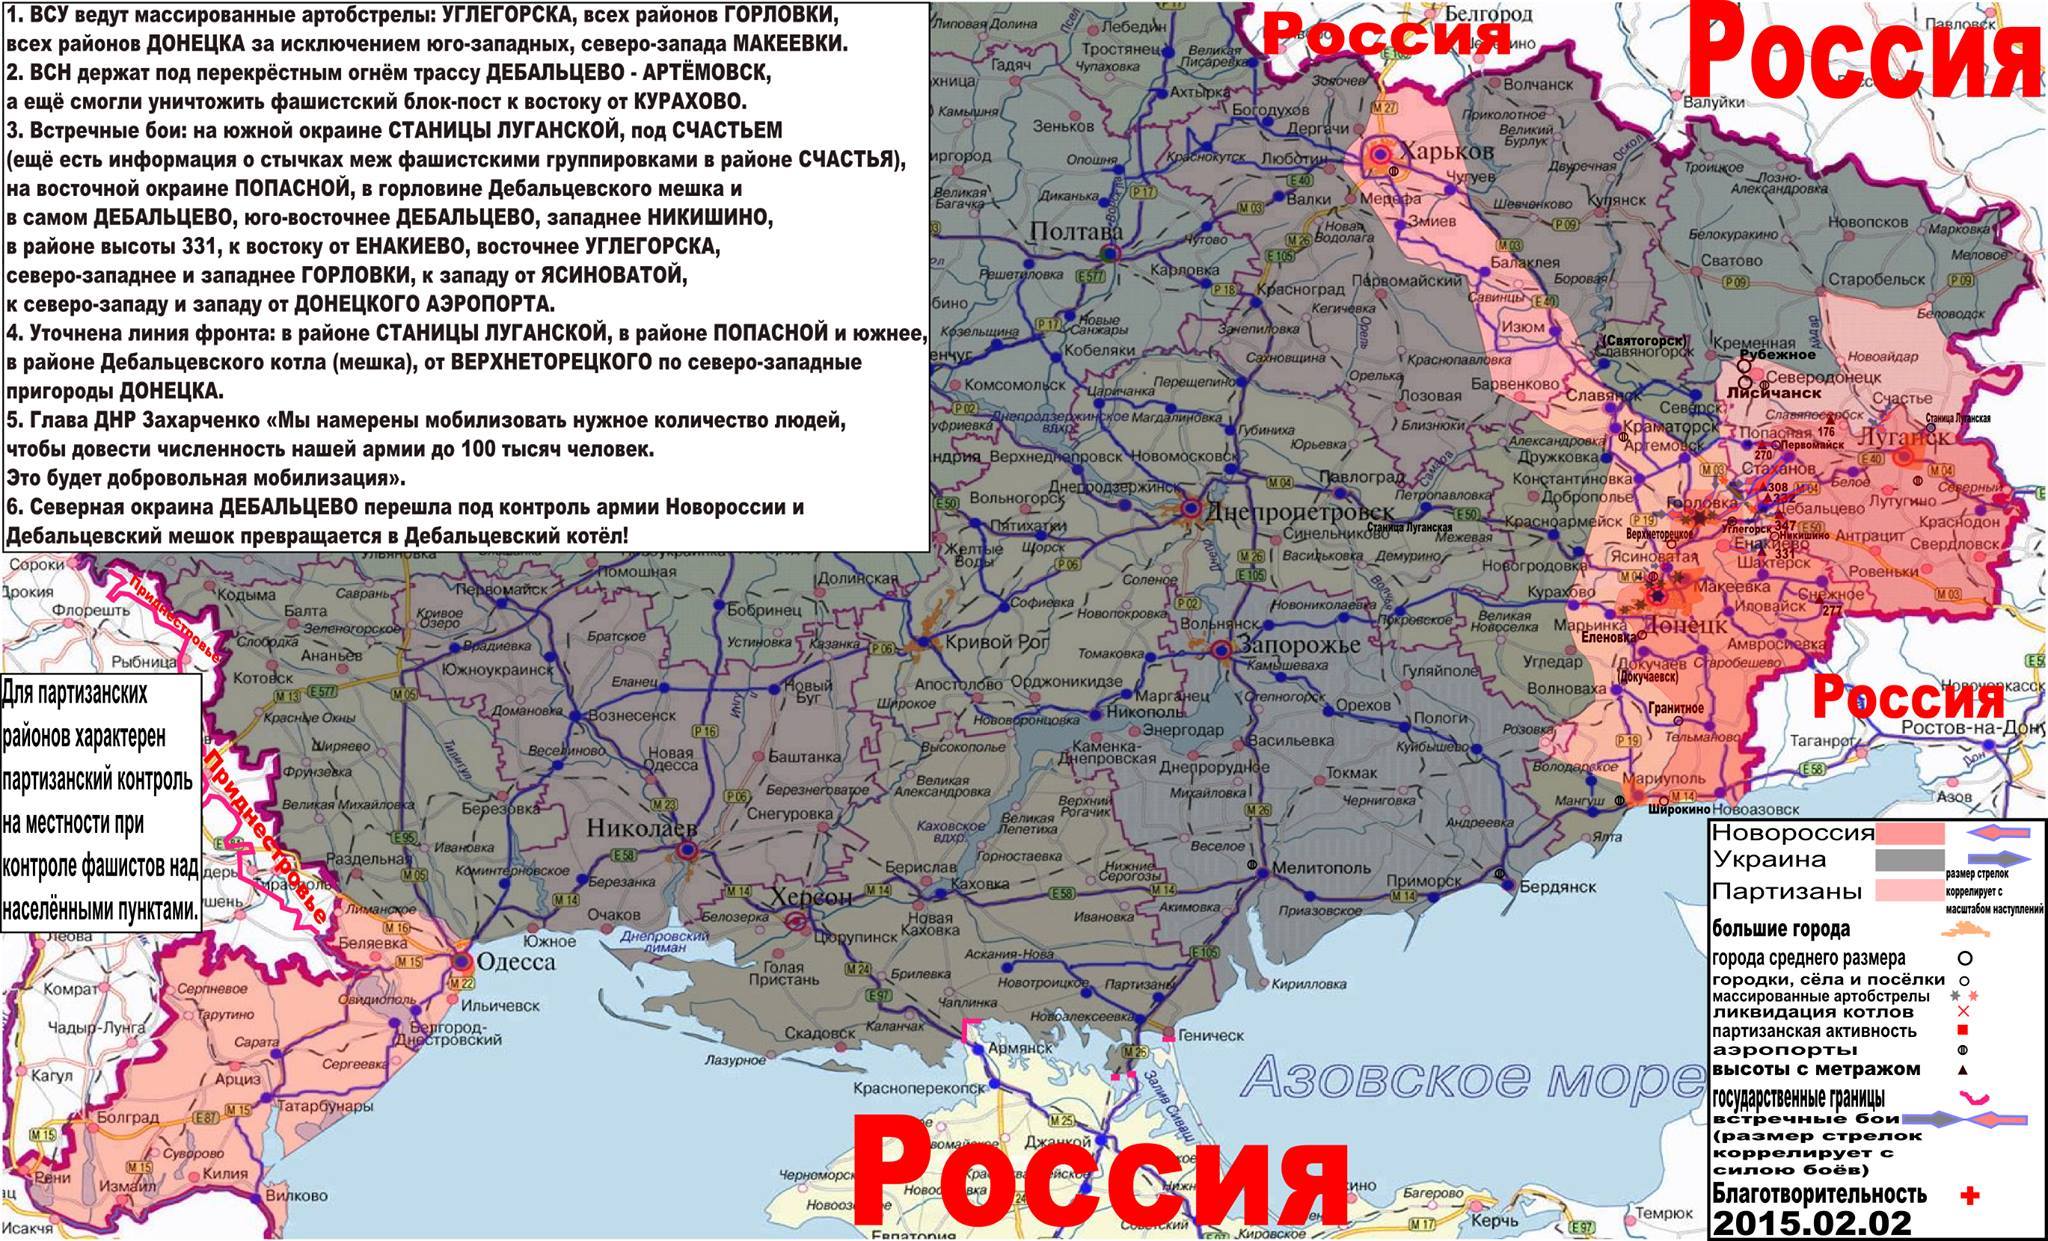   Alta Attivita di sabotaggi in Bessarabia (Odessa) a Kharkov e in altre città minori. E’ ufficialmente aperto il secondo fronte per la difesa della Novorussia. Tutto quello in rosa […]